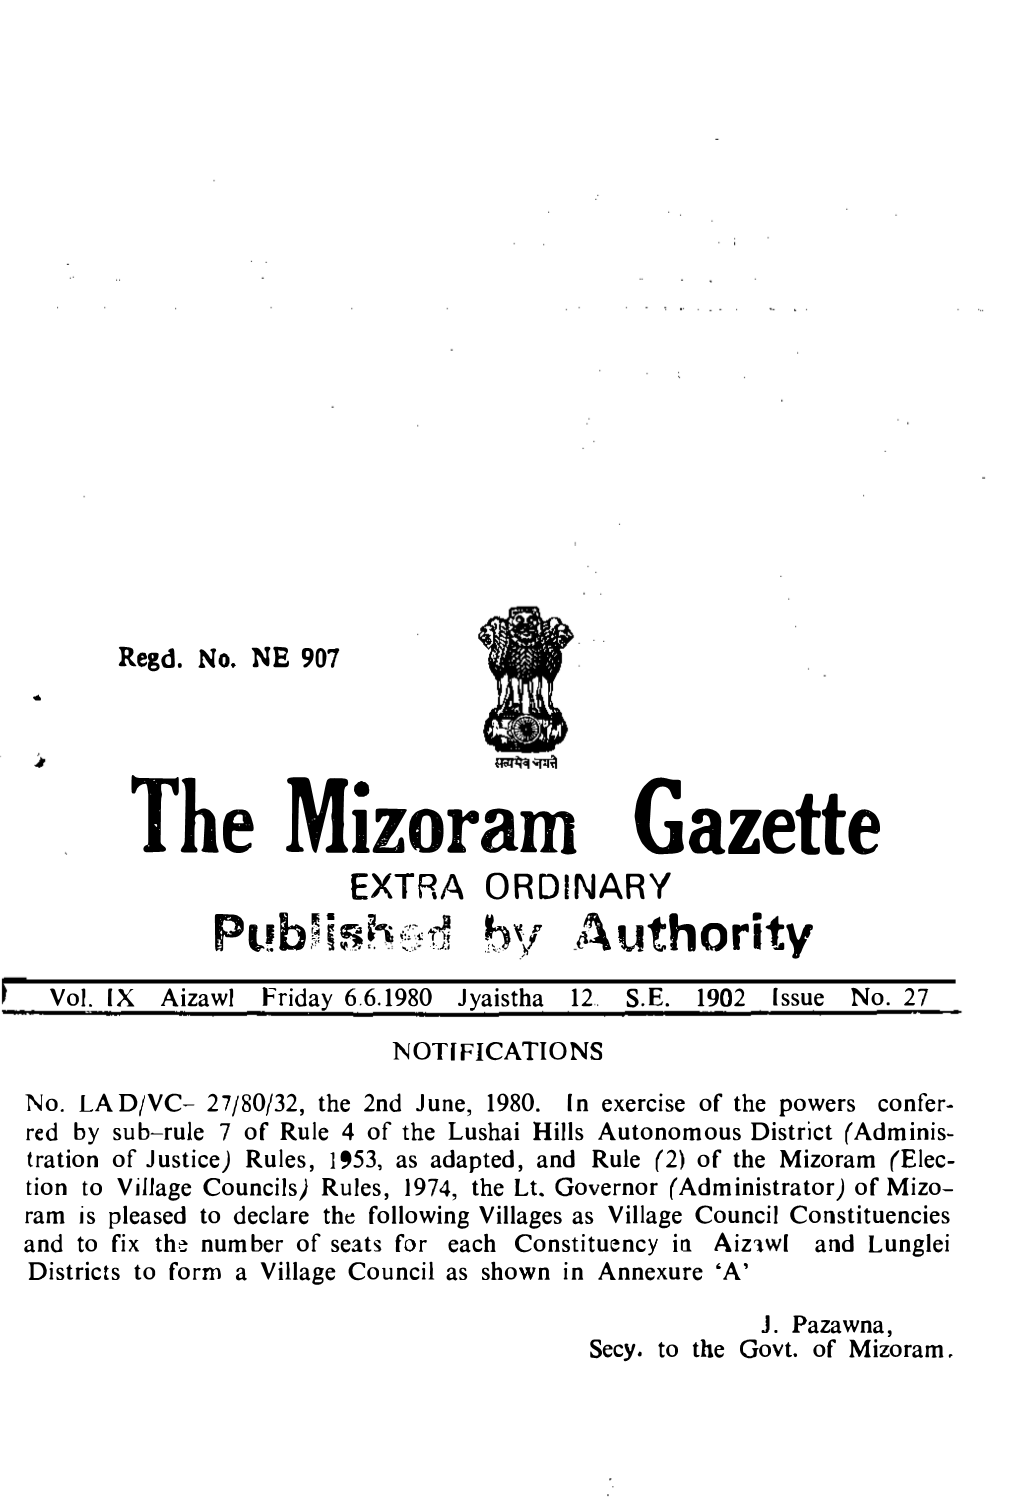 The Mizoram Gazette EXTRA ORDINARY